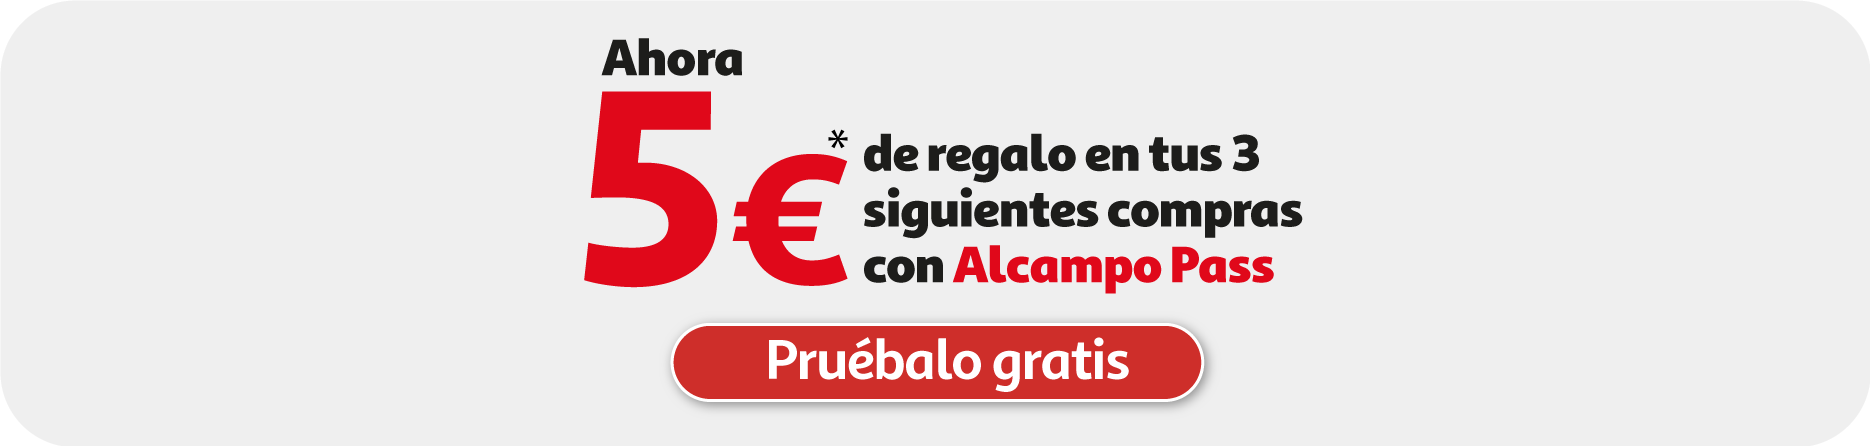 5€ de regalo en tus 3 primeras compras con Alcampo pass